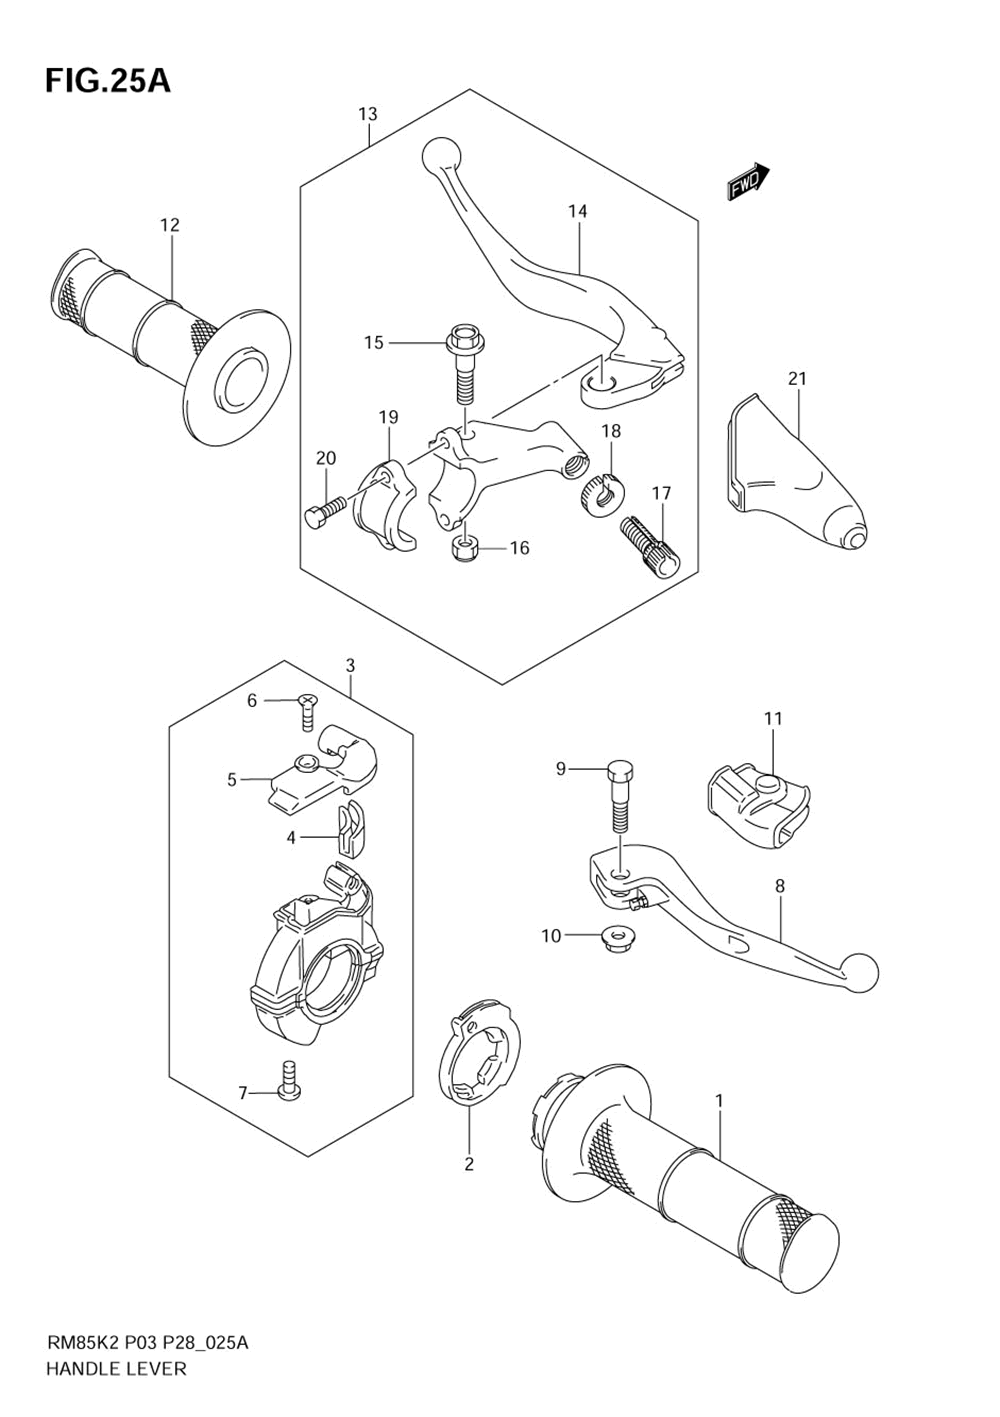 Handle lever (model k5_k6)